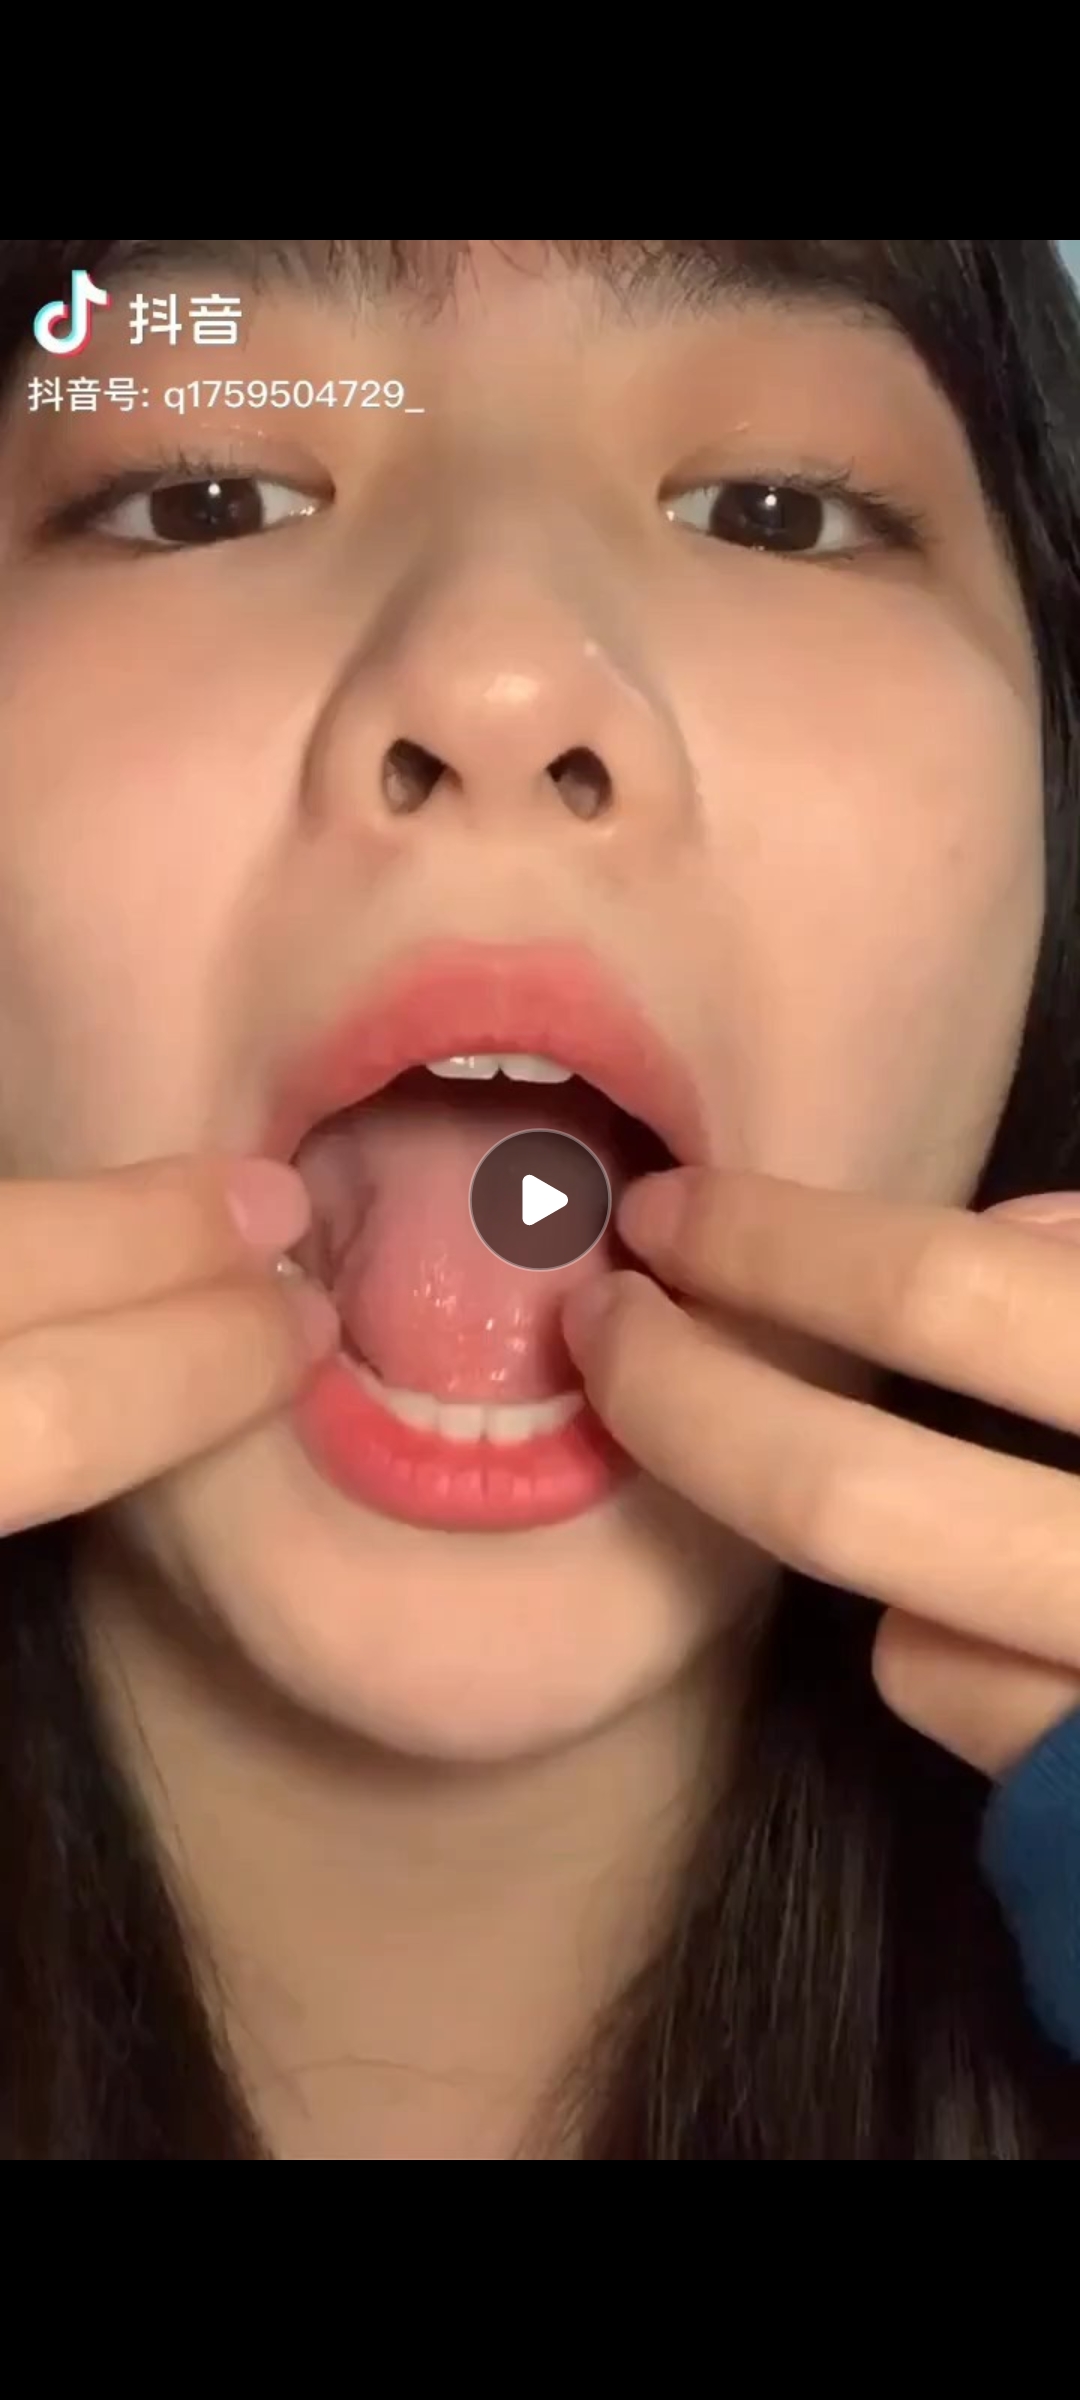 chinese girl uvula - video 10